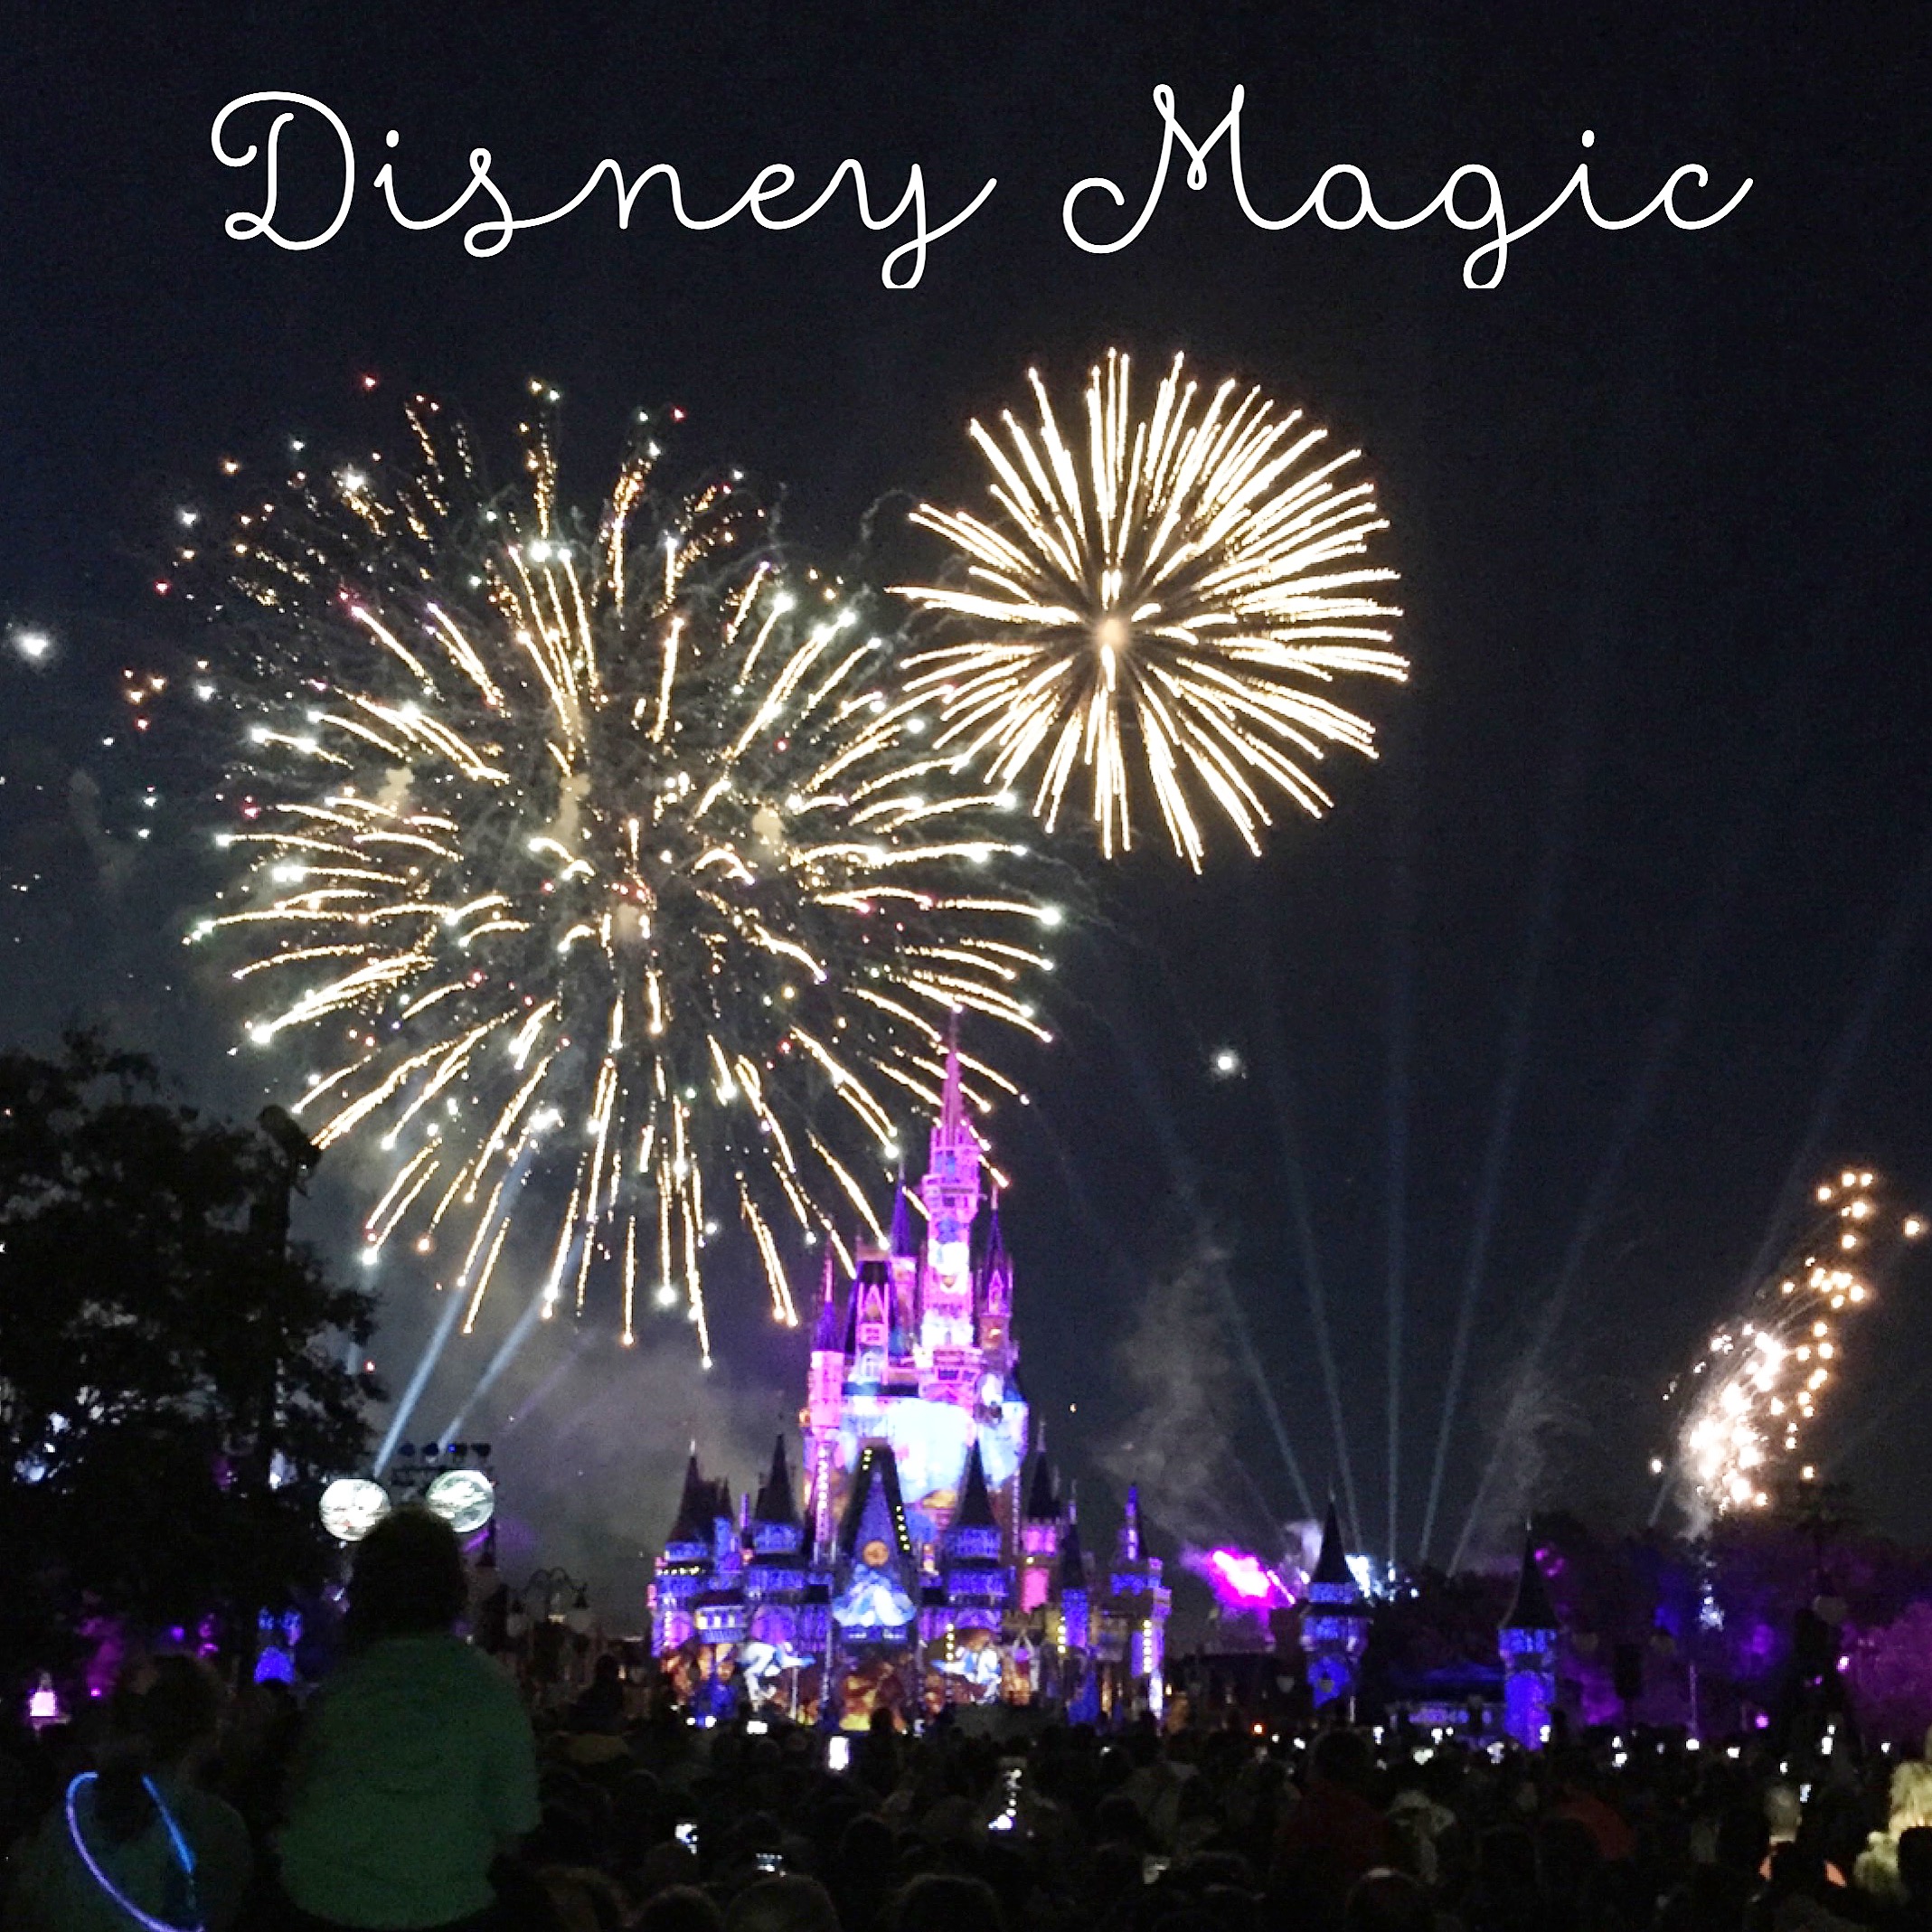 Disney Magic